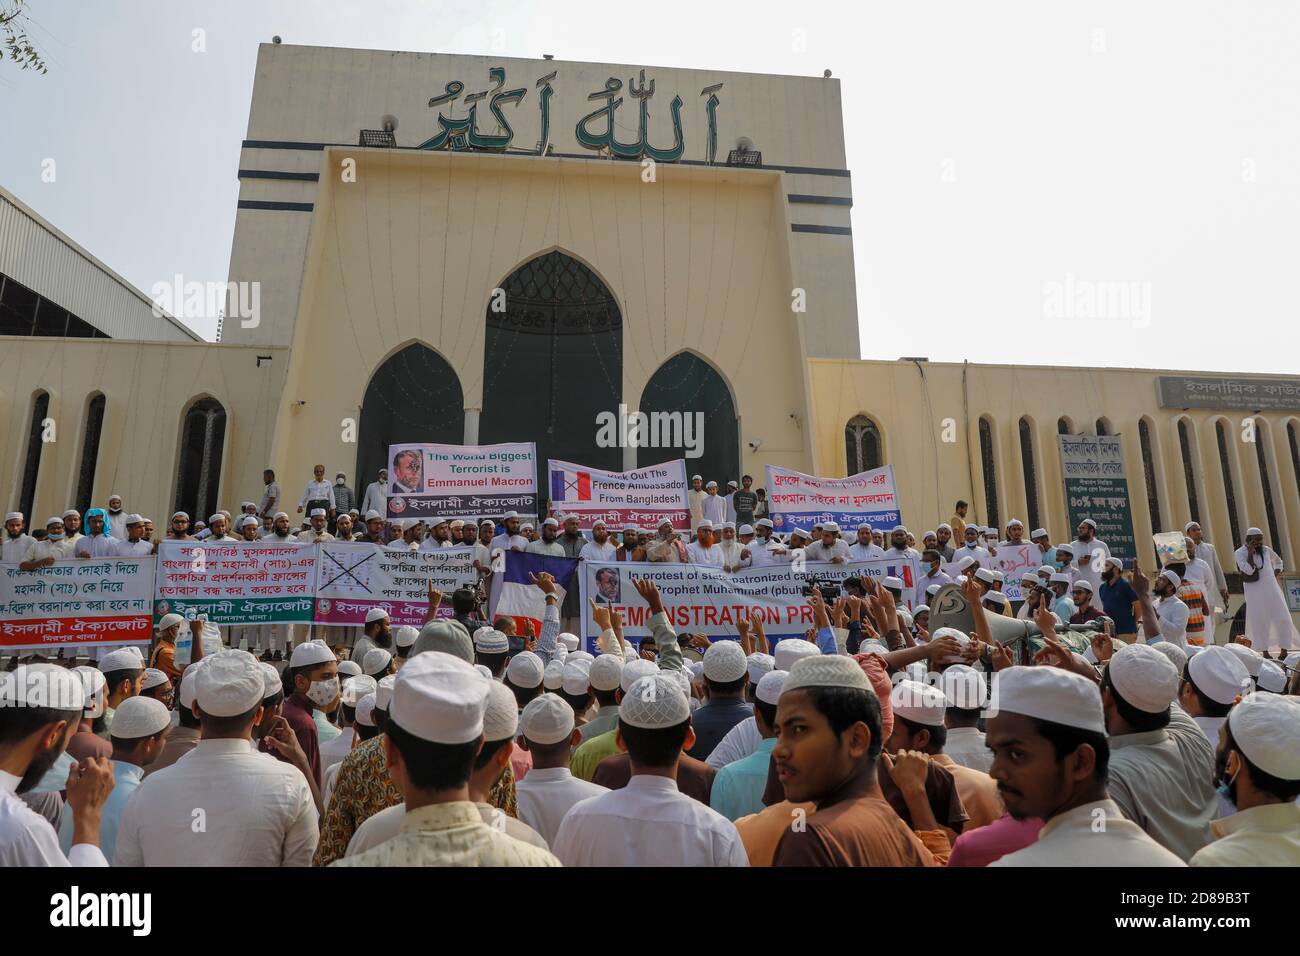 Les dirigeants et les activistes de Islami Oikyajot Bangladesh, un parti politique islamiste, ont organisé une manifestation appelant au boycott des produits français an Banque D'Images